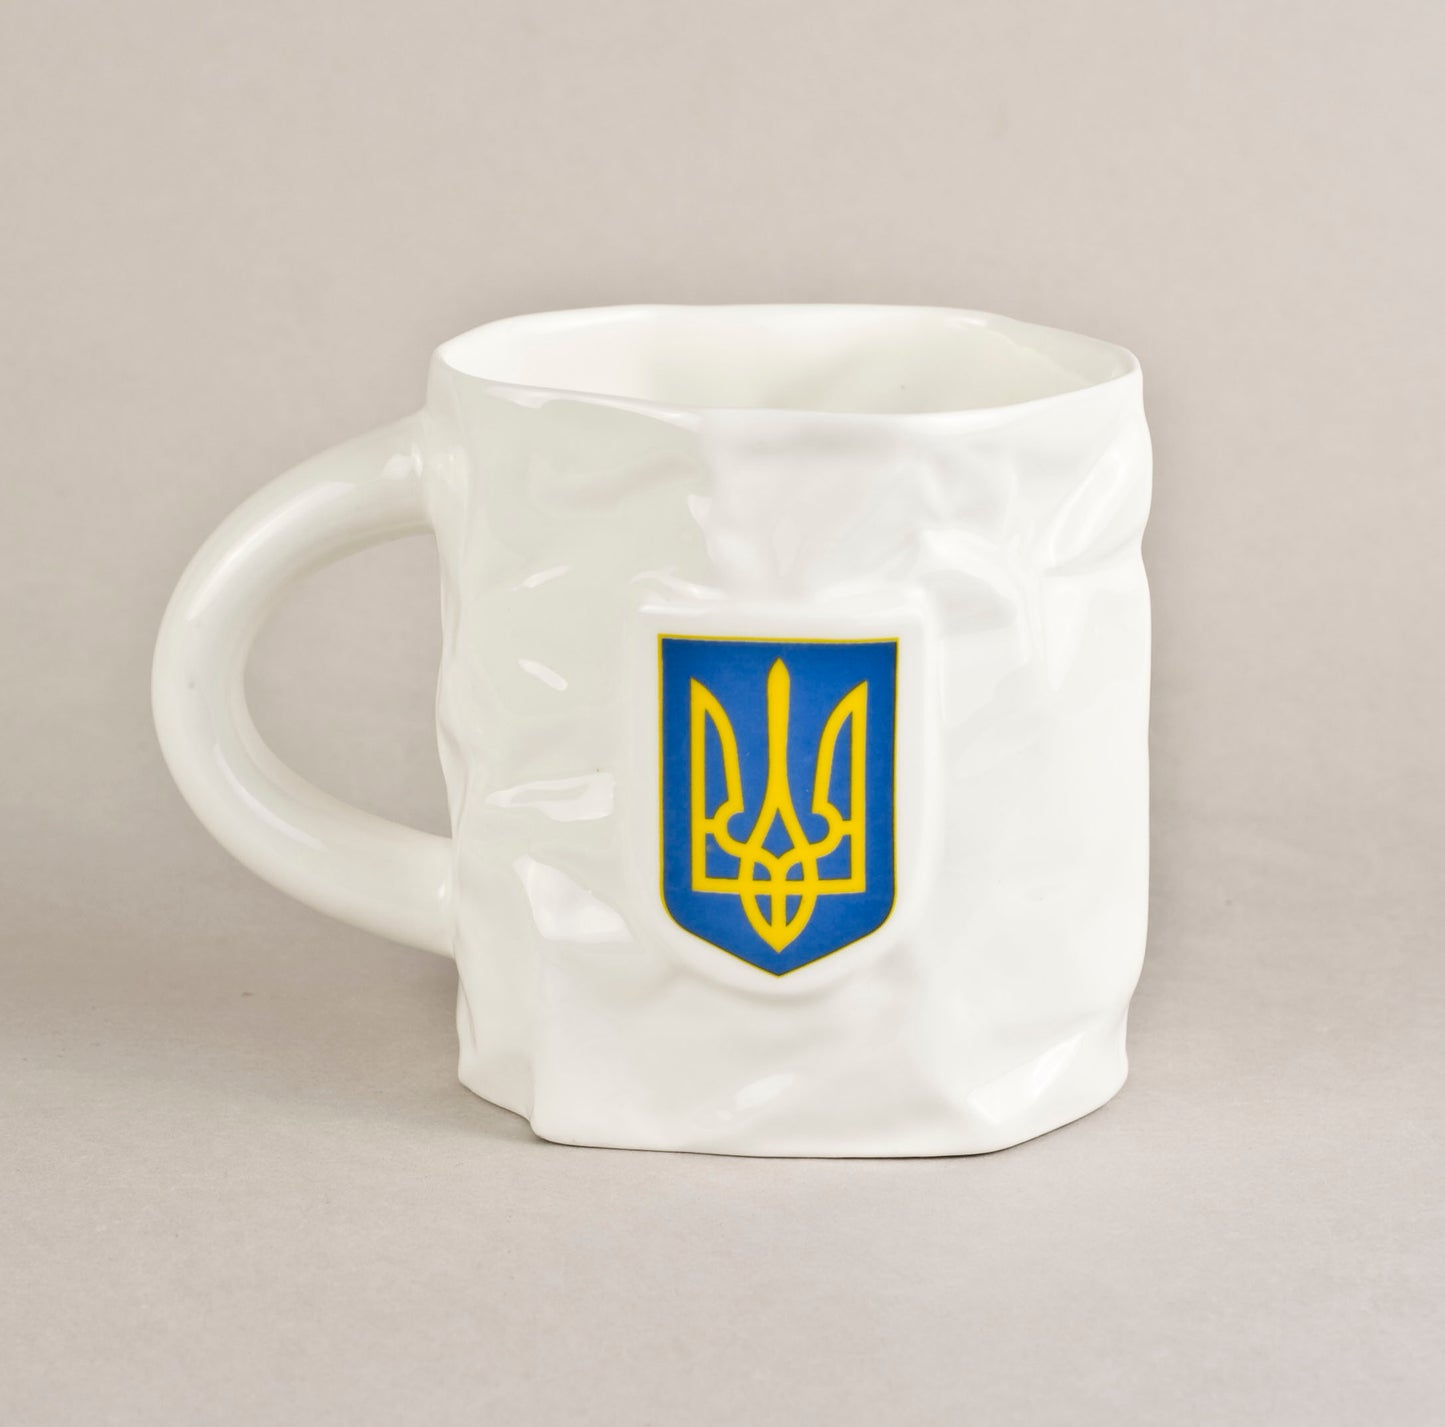 Ukraina. Burzīta tējas krūze 2